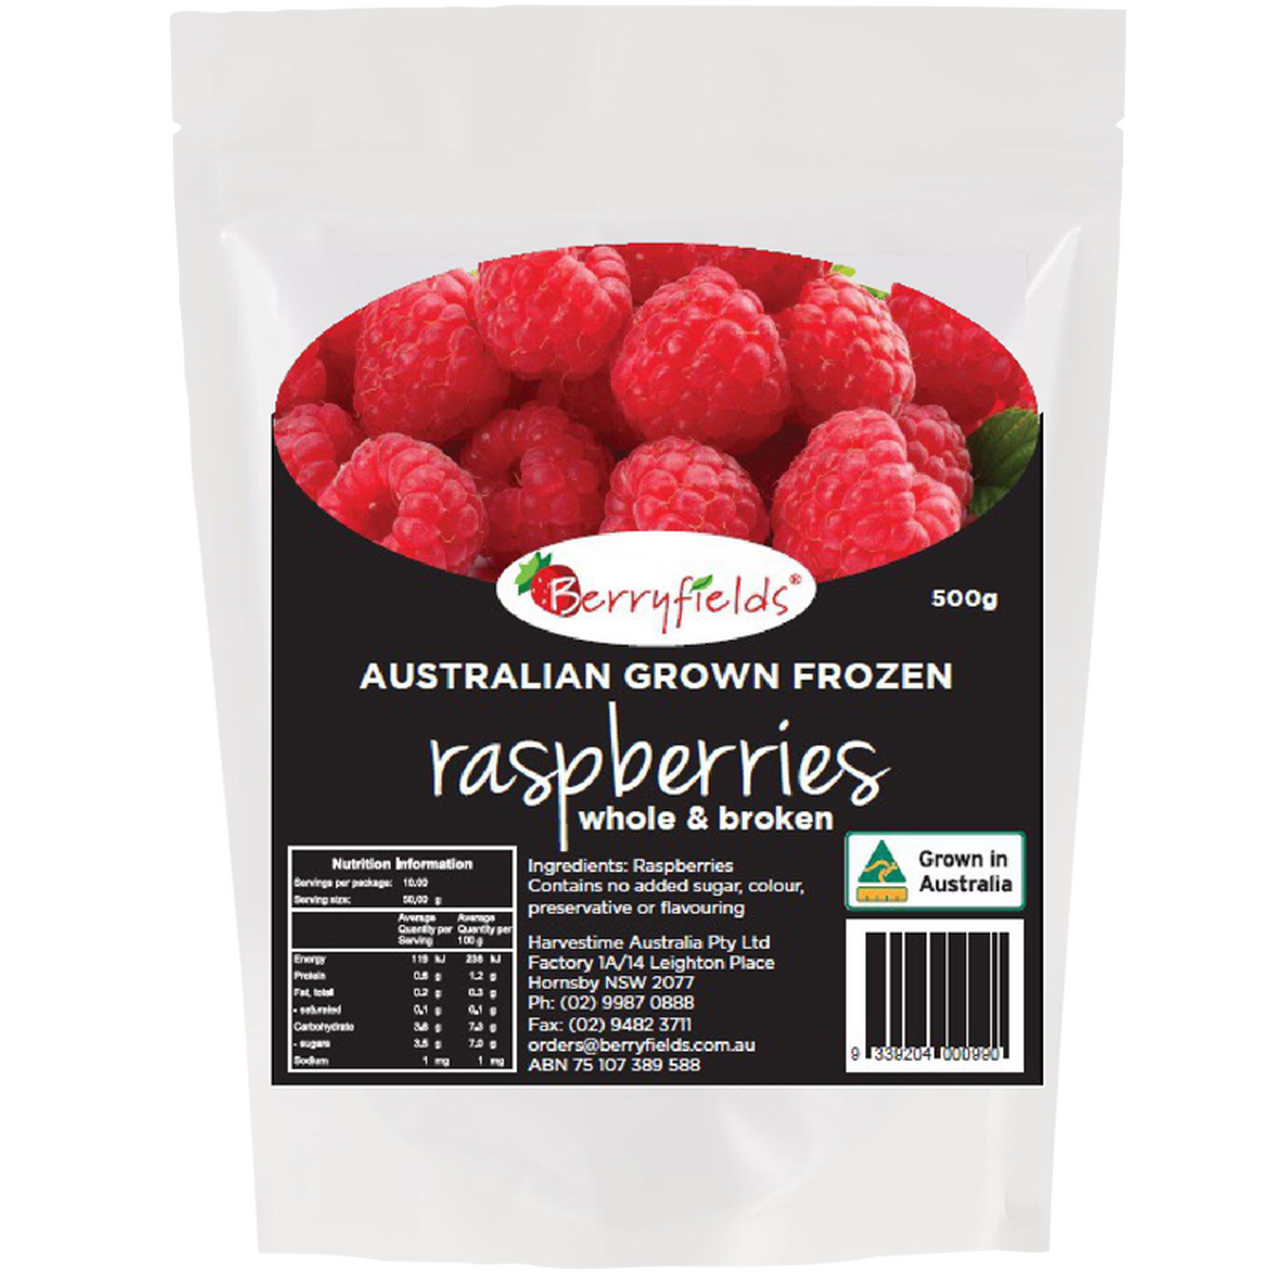 Frozen - Berryfields Raspberries 400g